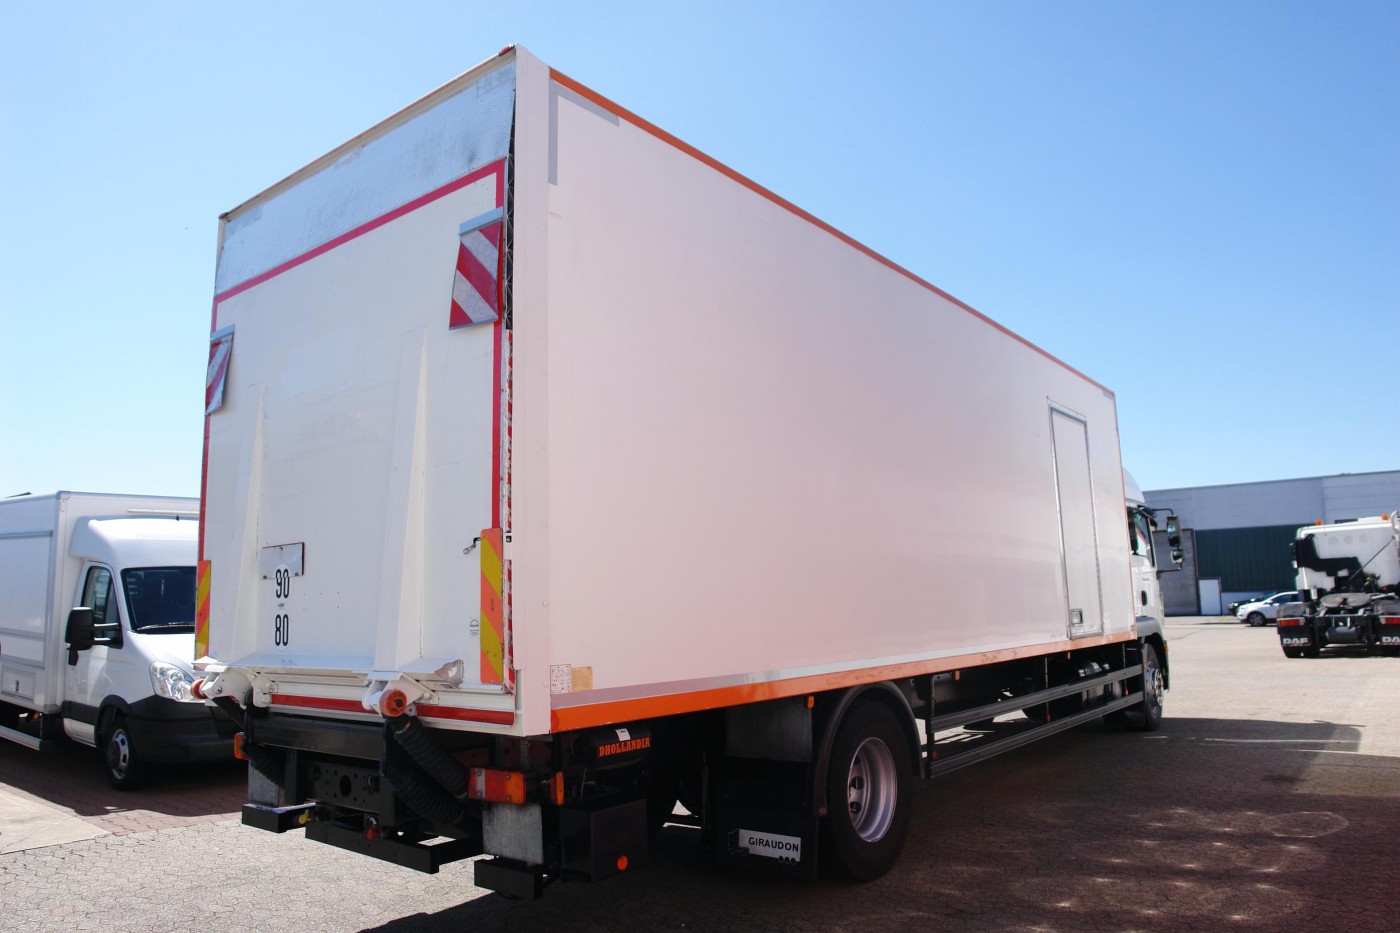 MAN TGM 18.340 box sleeping cab air suspension liftgate Dhollandia 2000 kg EURO 5 TÜV new!